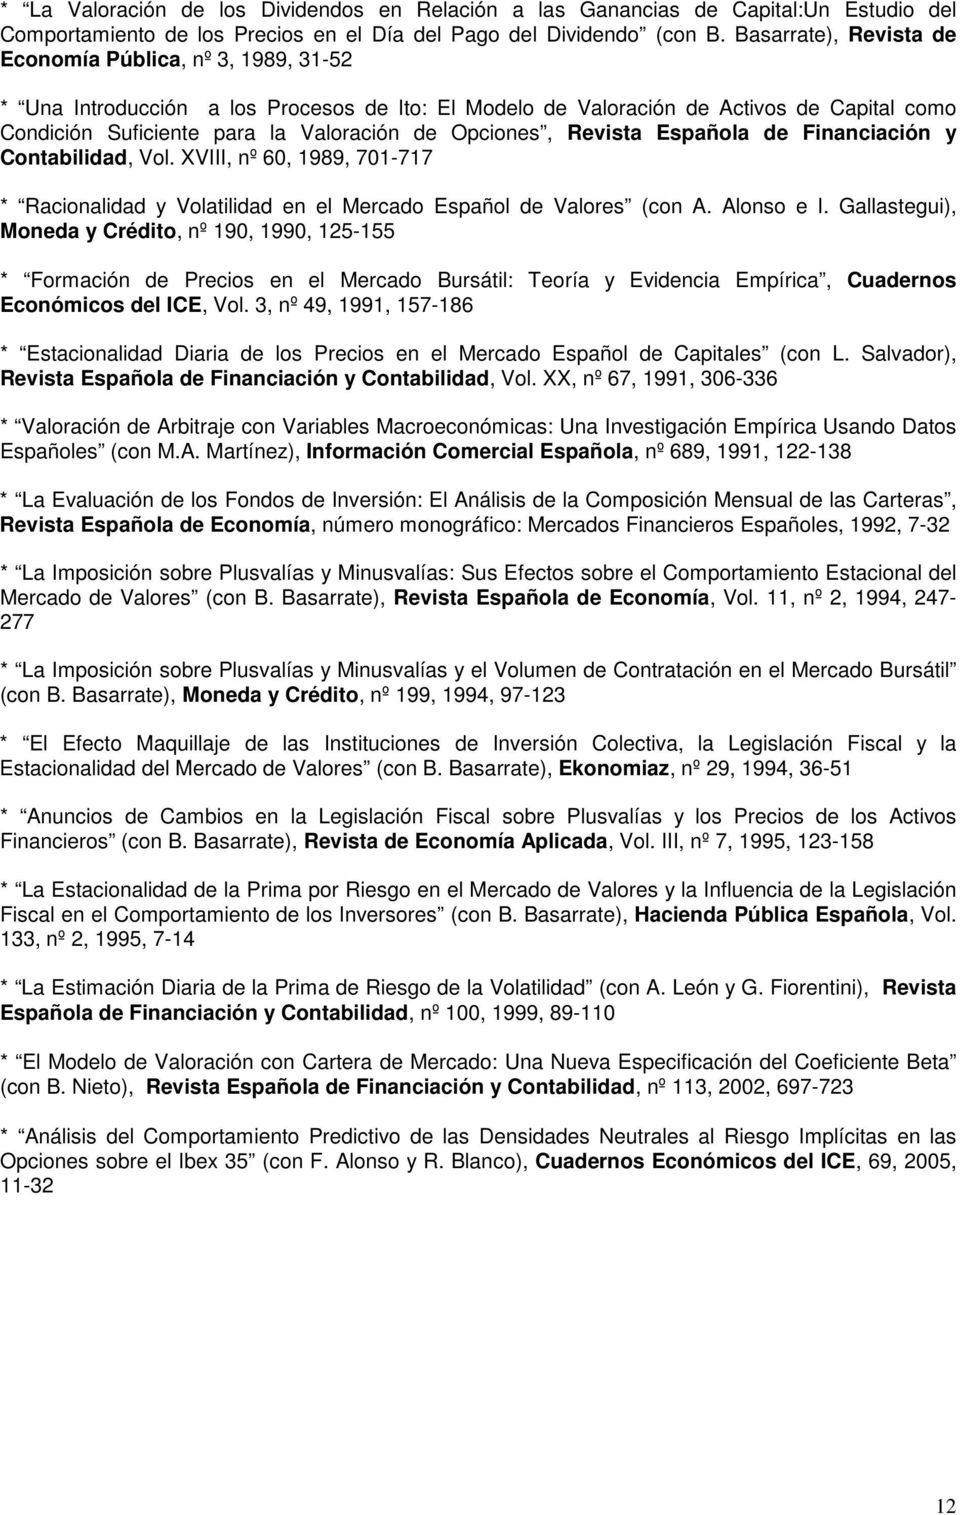 Opciones, Revista Española de Financiación y Contabilidad, Vol. XVIII, nº 60, 1989, 701-717 * Racionalidad y Volatilidad en el Mercado Español de Valores (con A. Alonso e I.